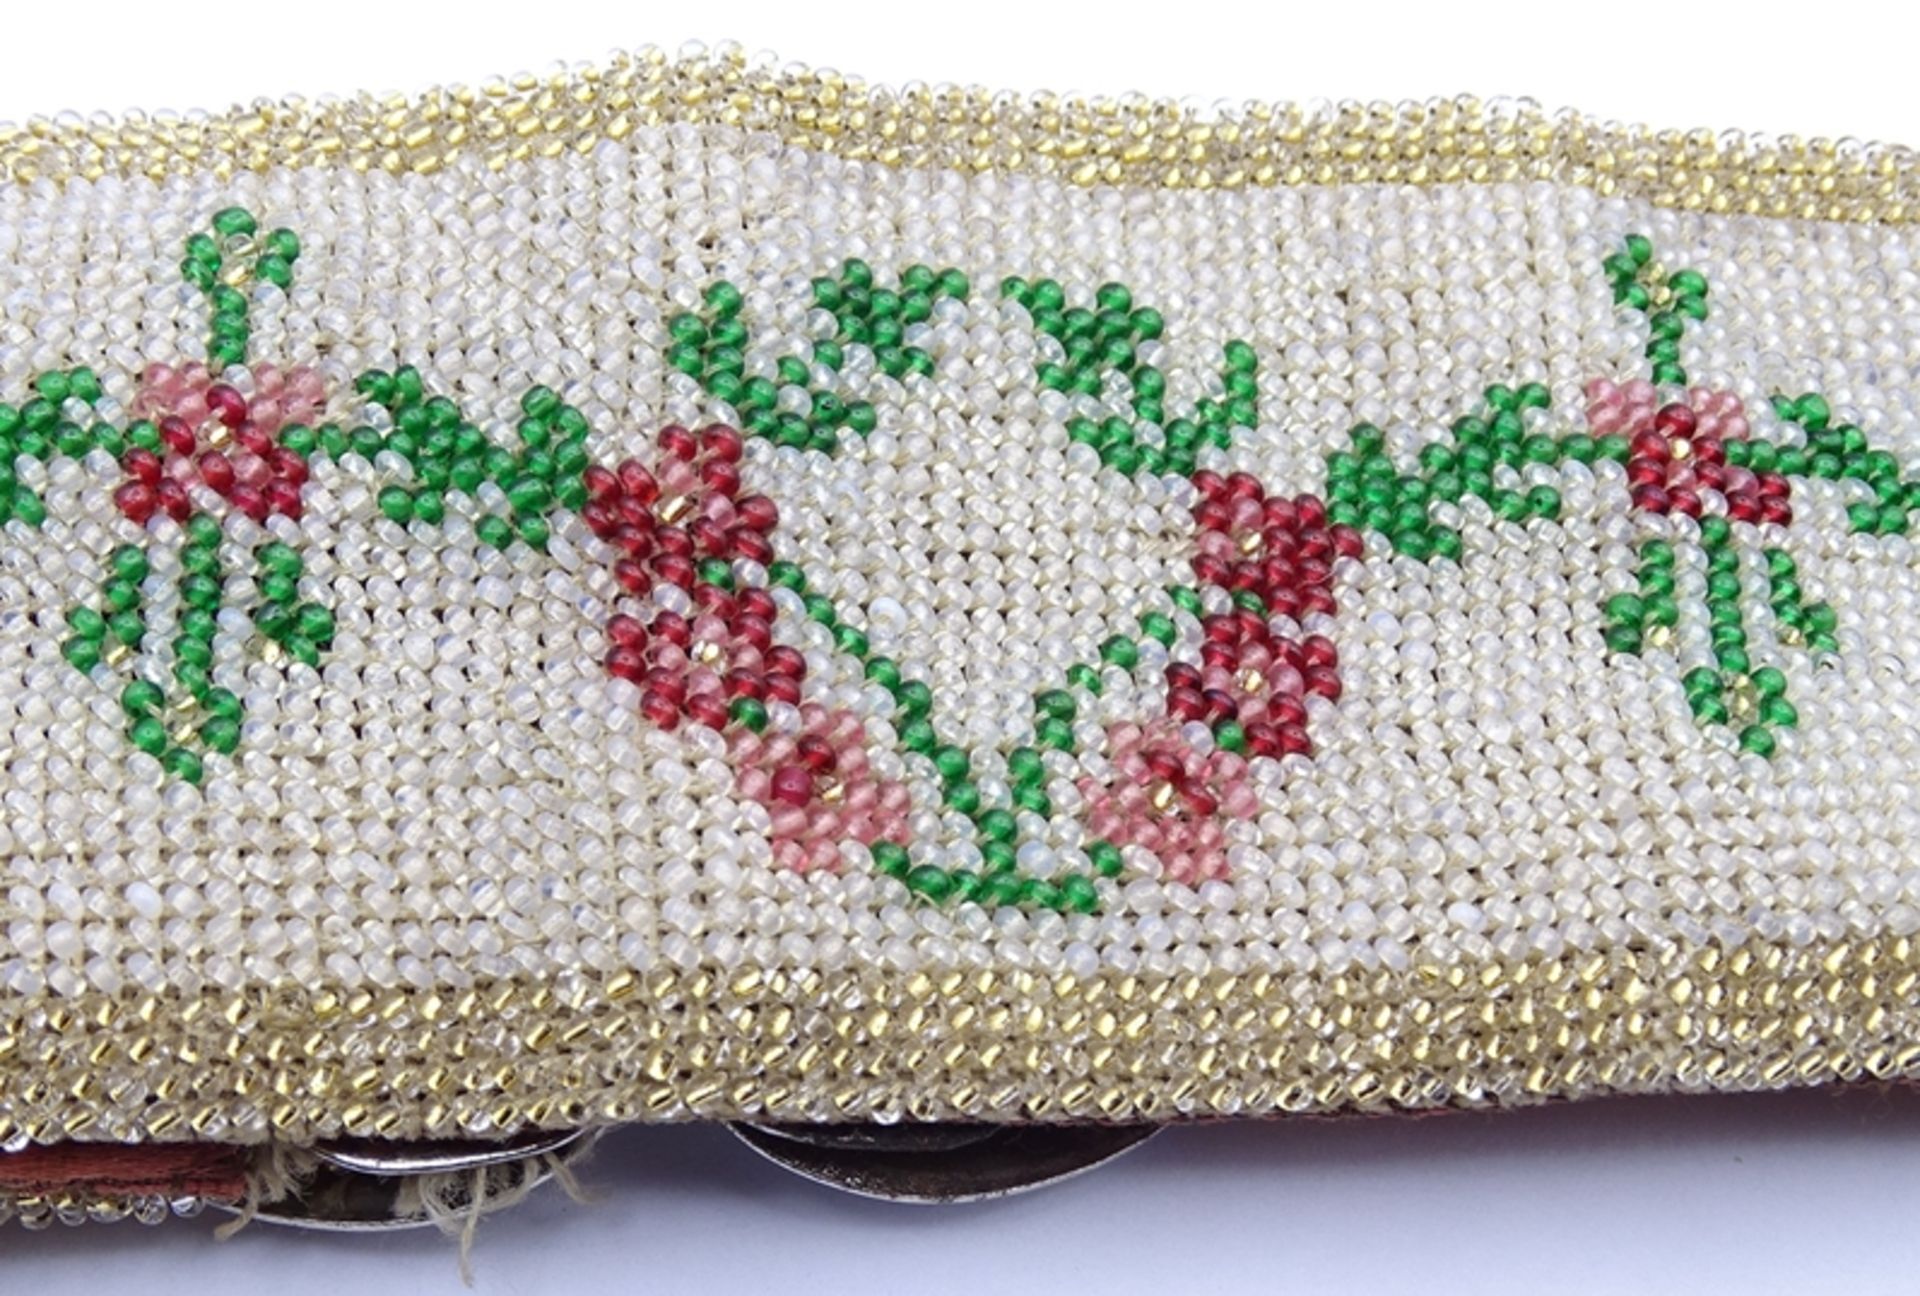 Trachtengürtel mit Perlenstickerei, 1x Faden gezogen, Metallschnalle, Alters- und Gebrauchsspuren - Bild 6 aus 6